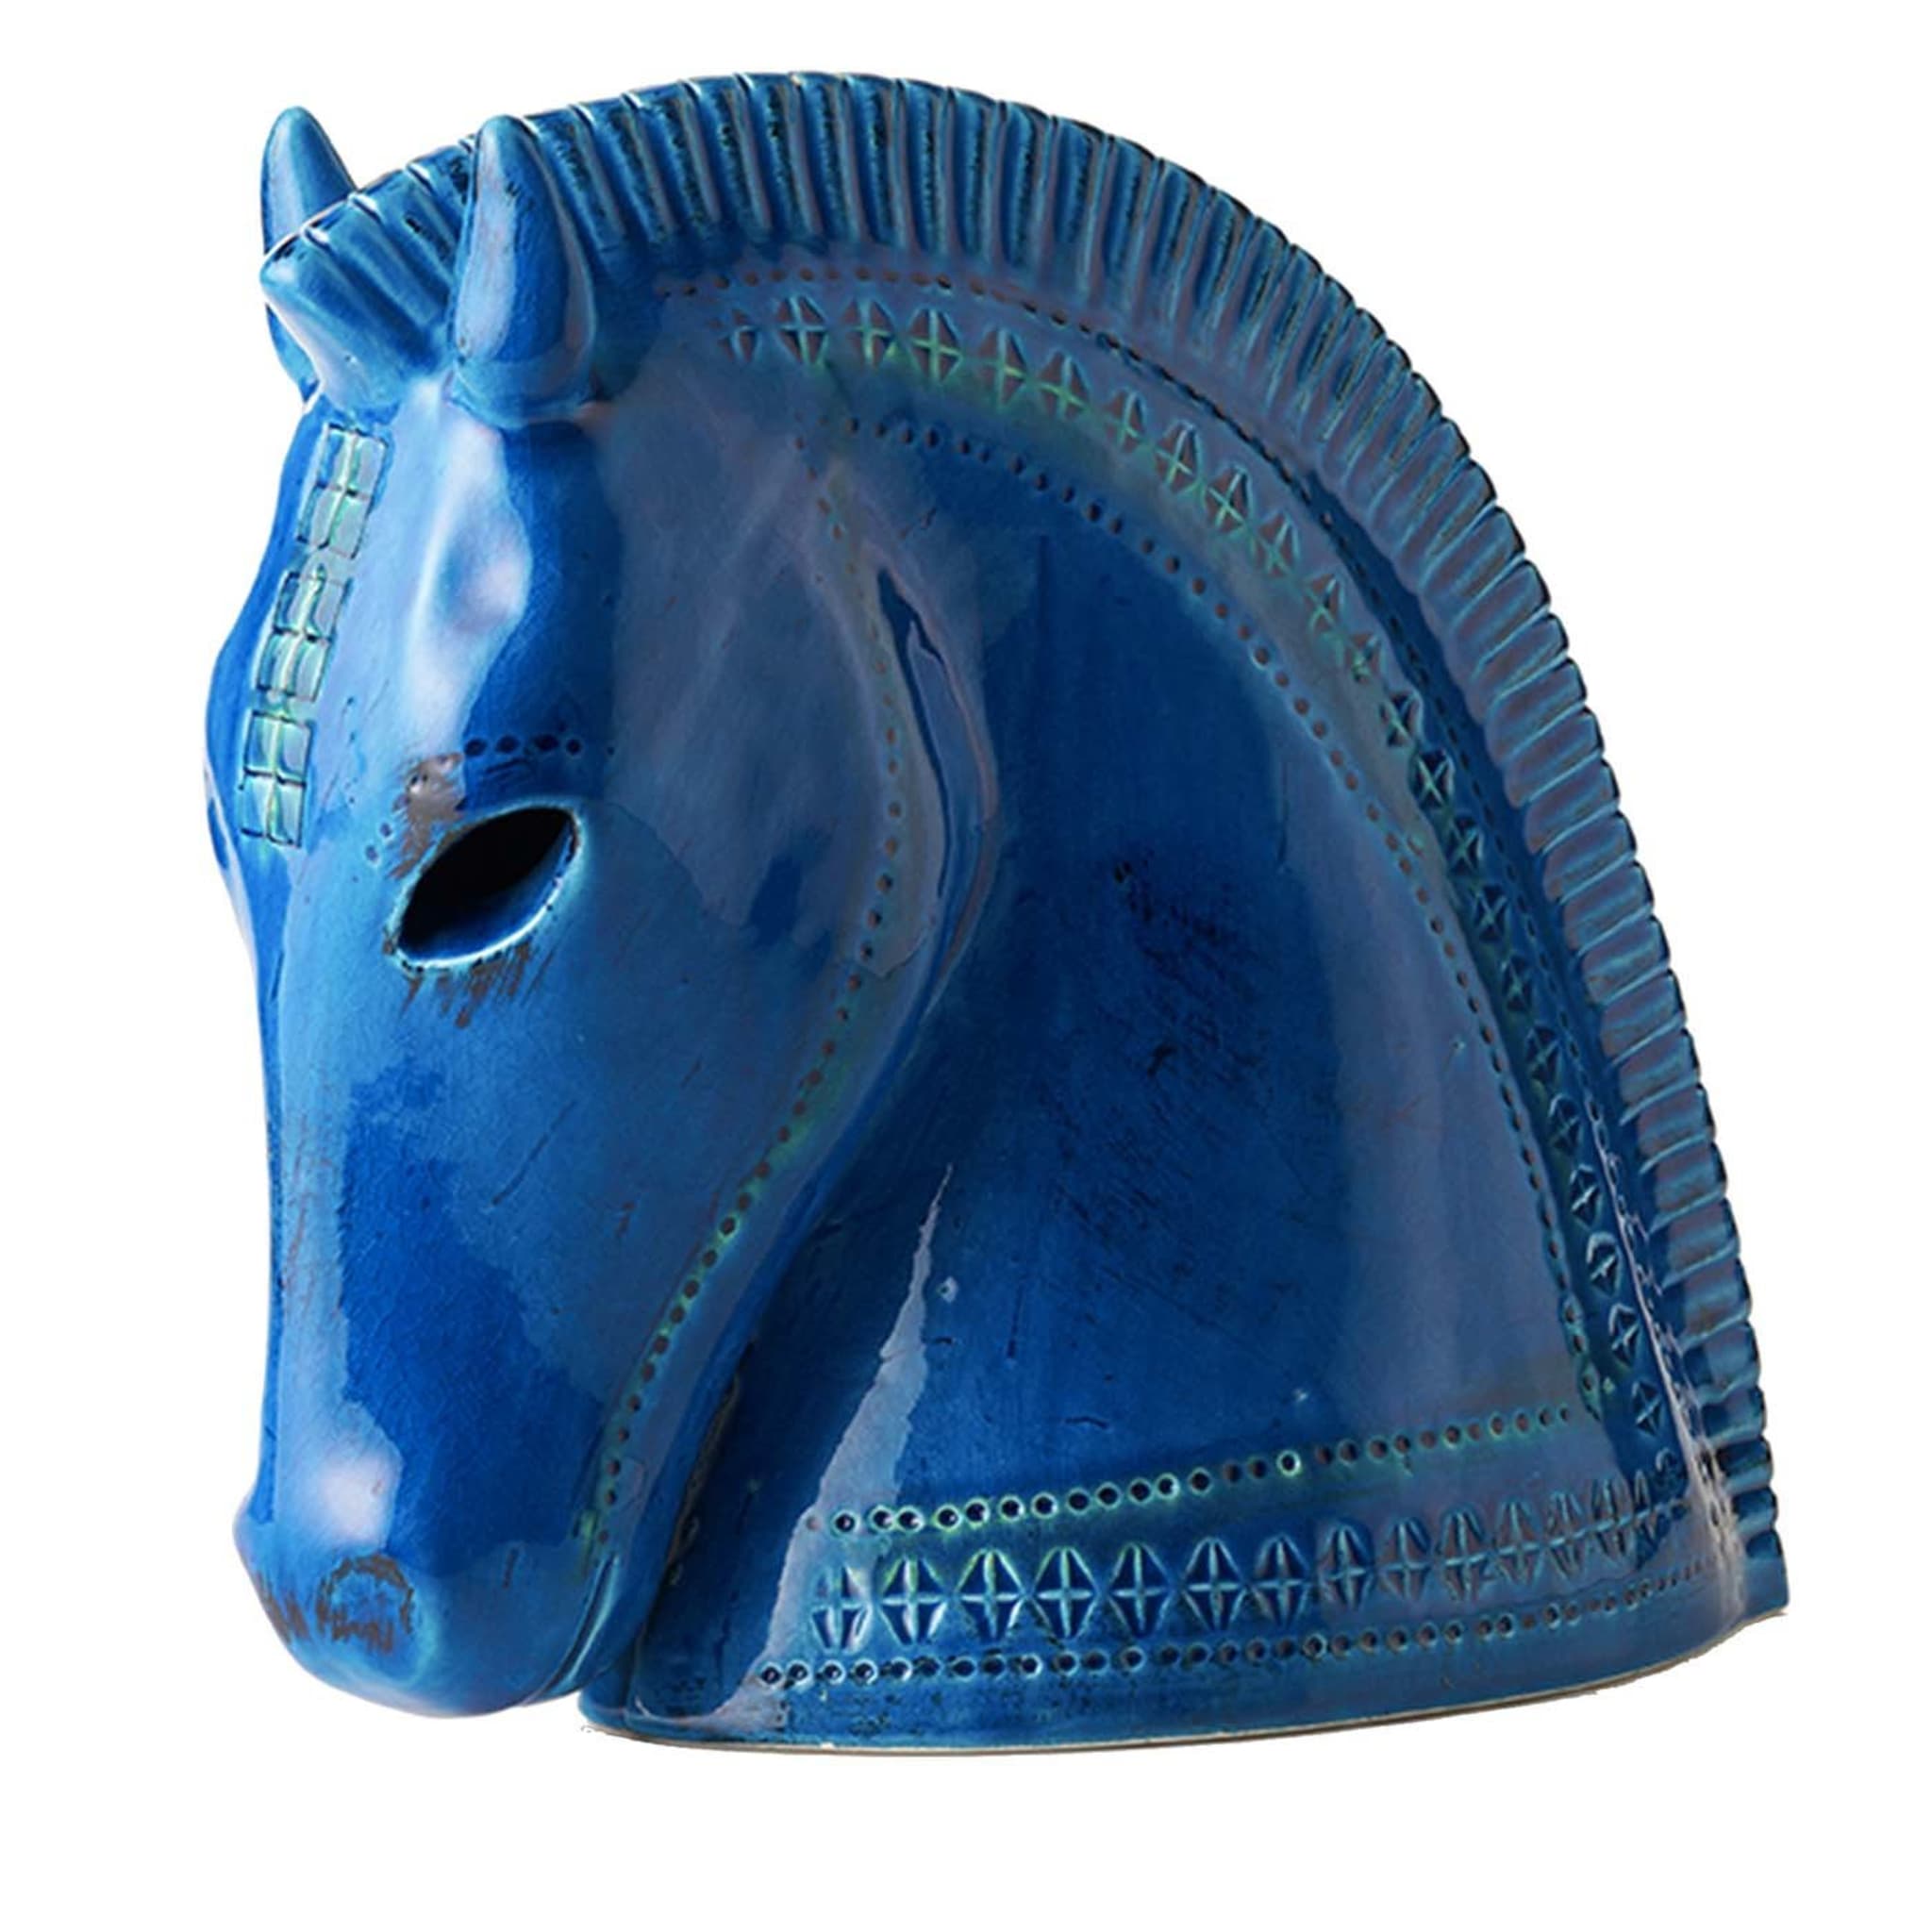 Rimini Blu Horse Head Figurine by Aldo Londi - Main view